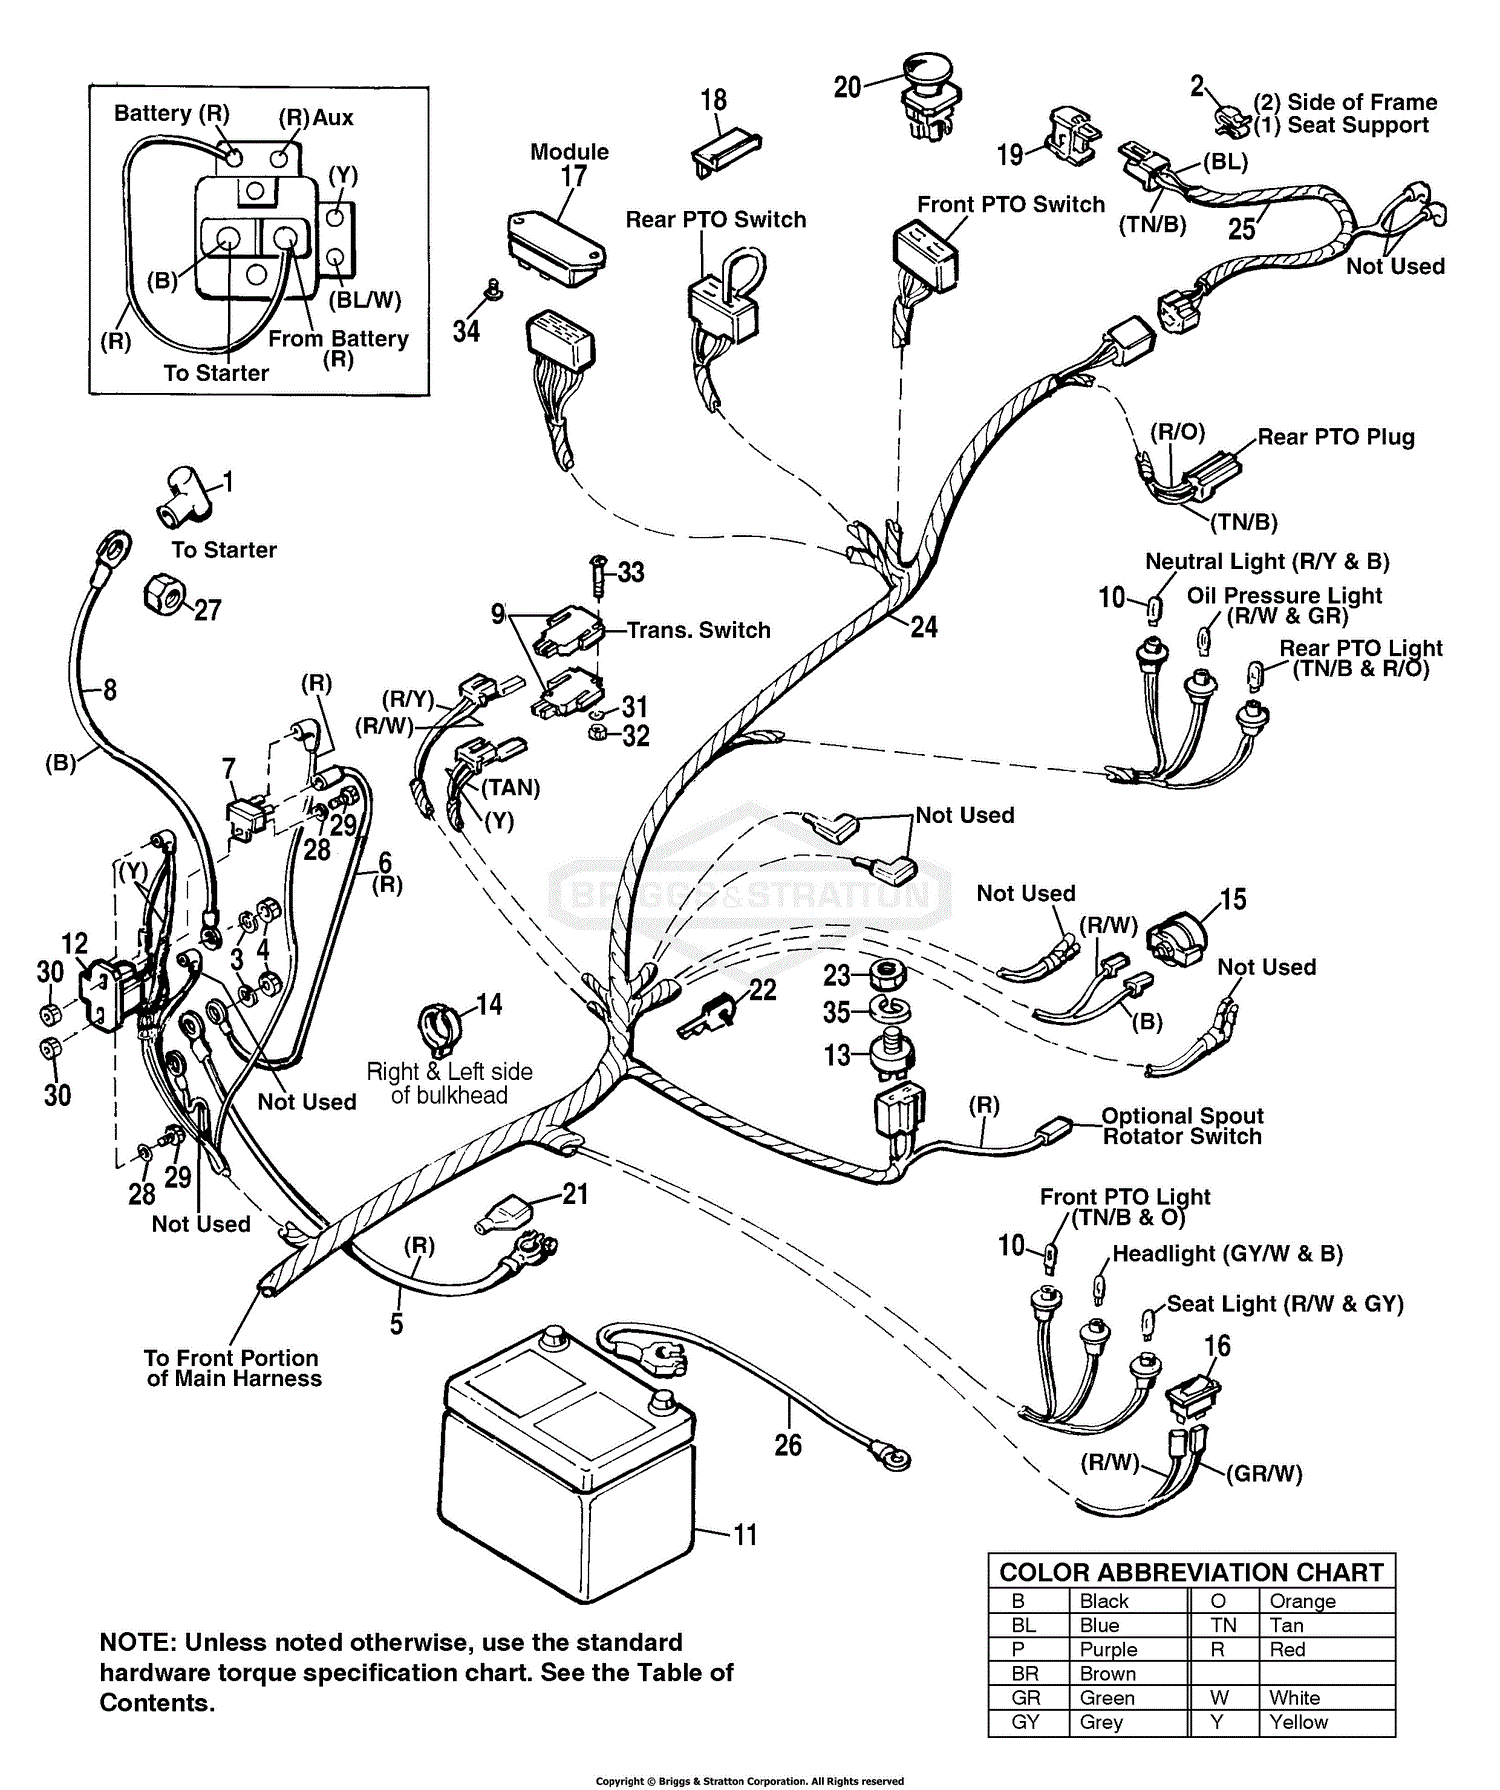 Lift Control Panel Wiring Diagram Pdf : I have a 1992 JLG scissor lift